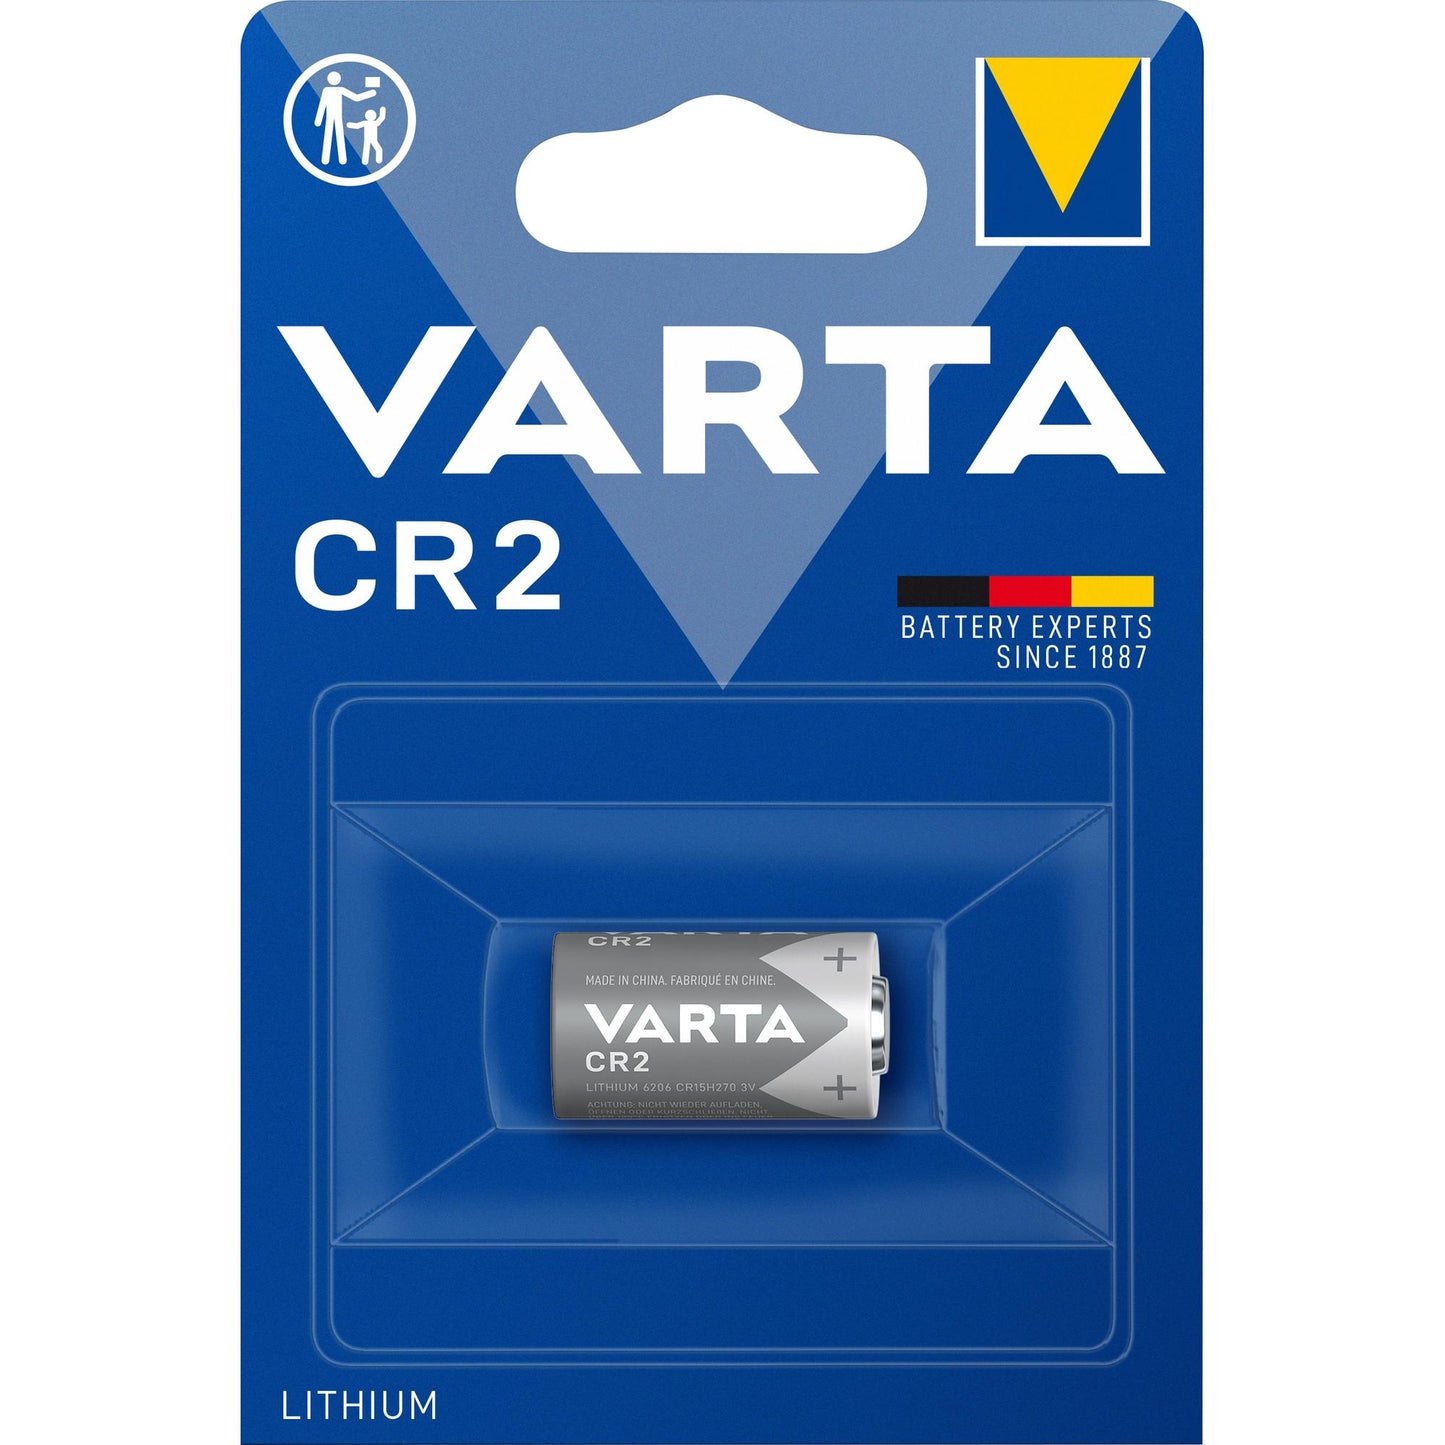 VARTA Batterie Lithium CR2, 3V Photo, Retail Blister (1-Pack)